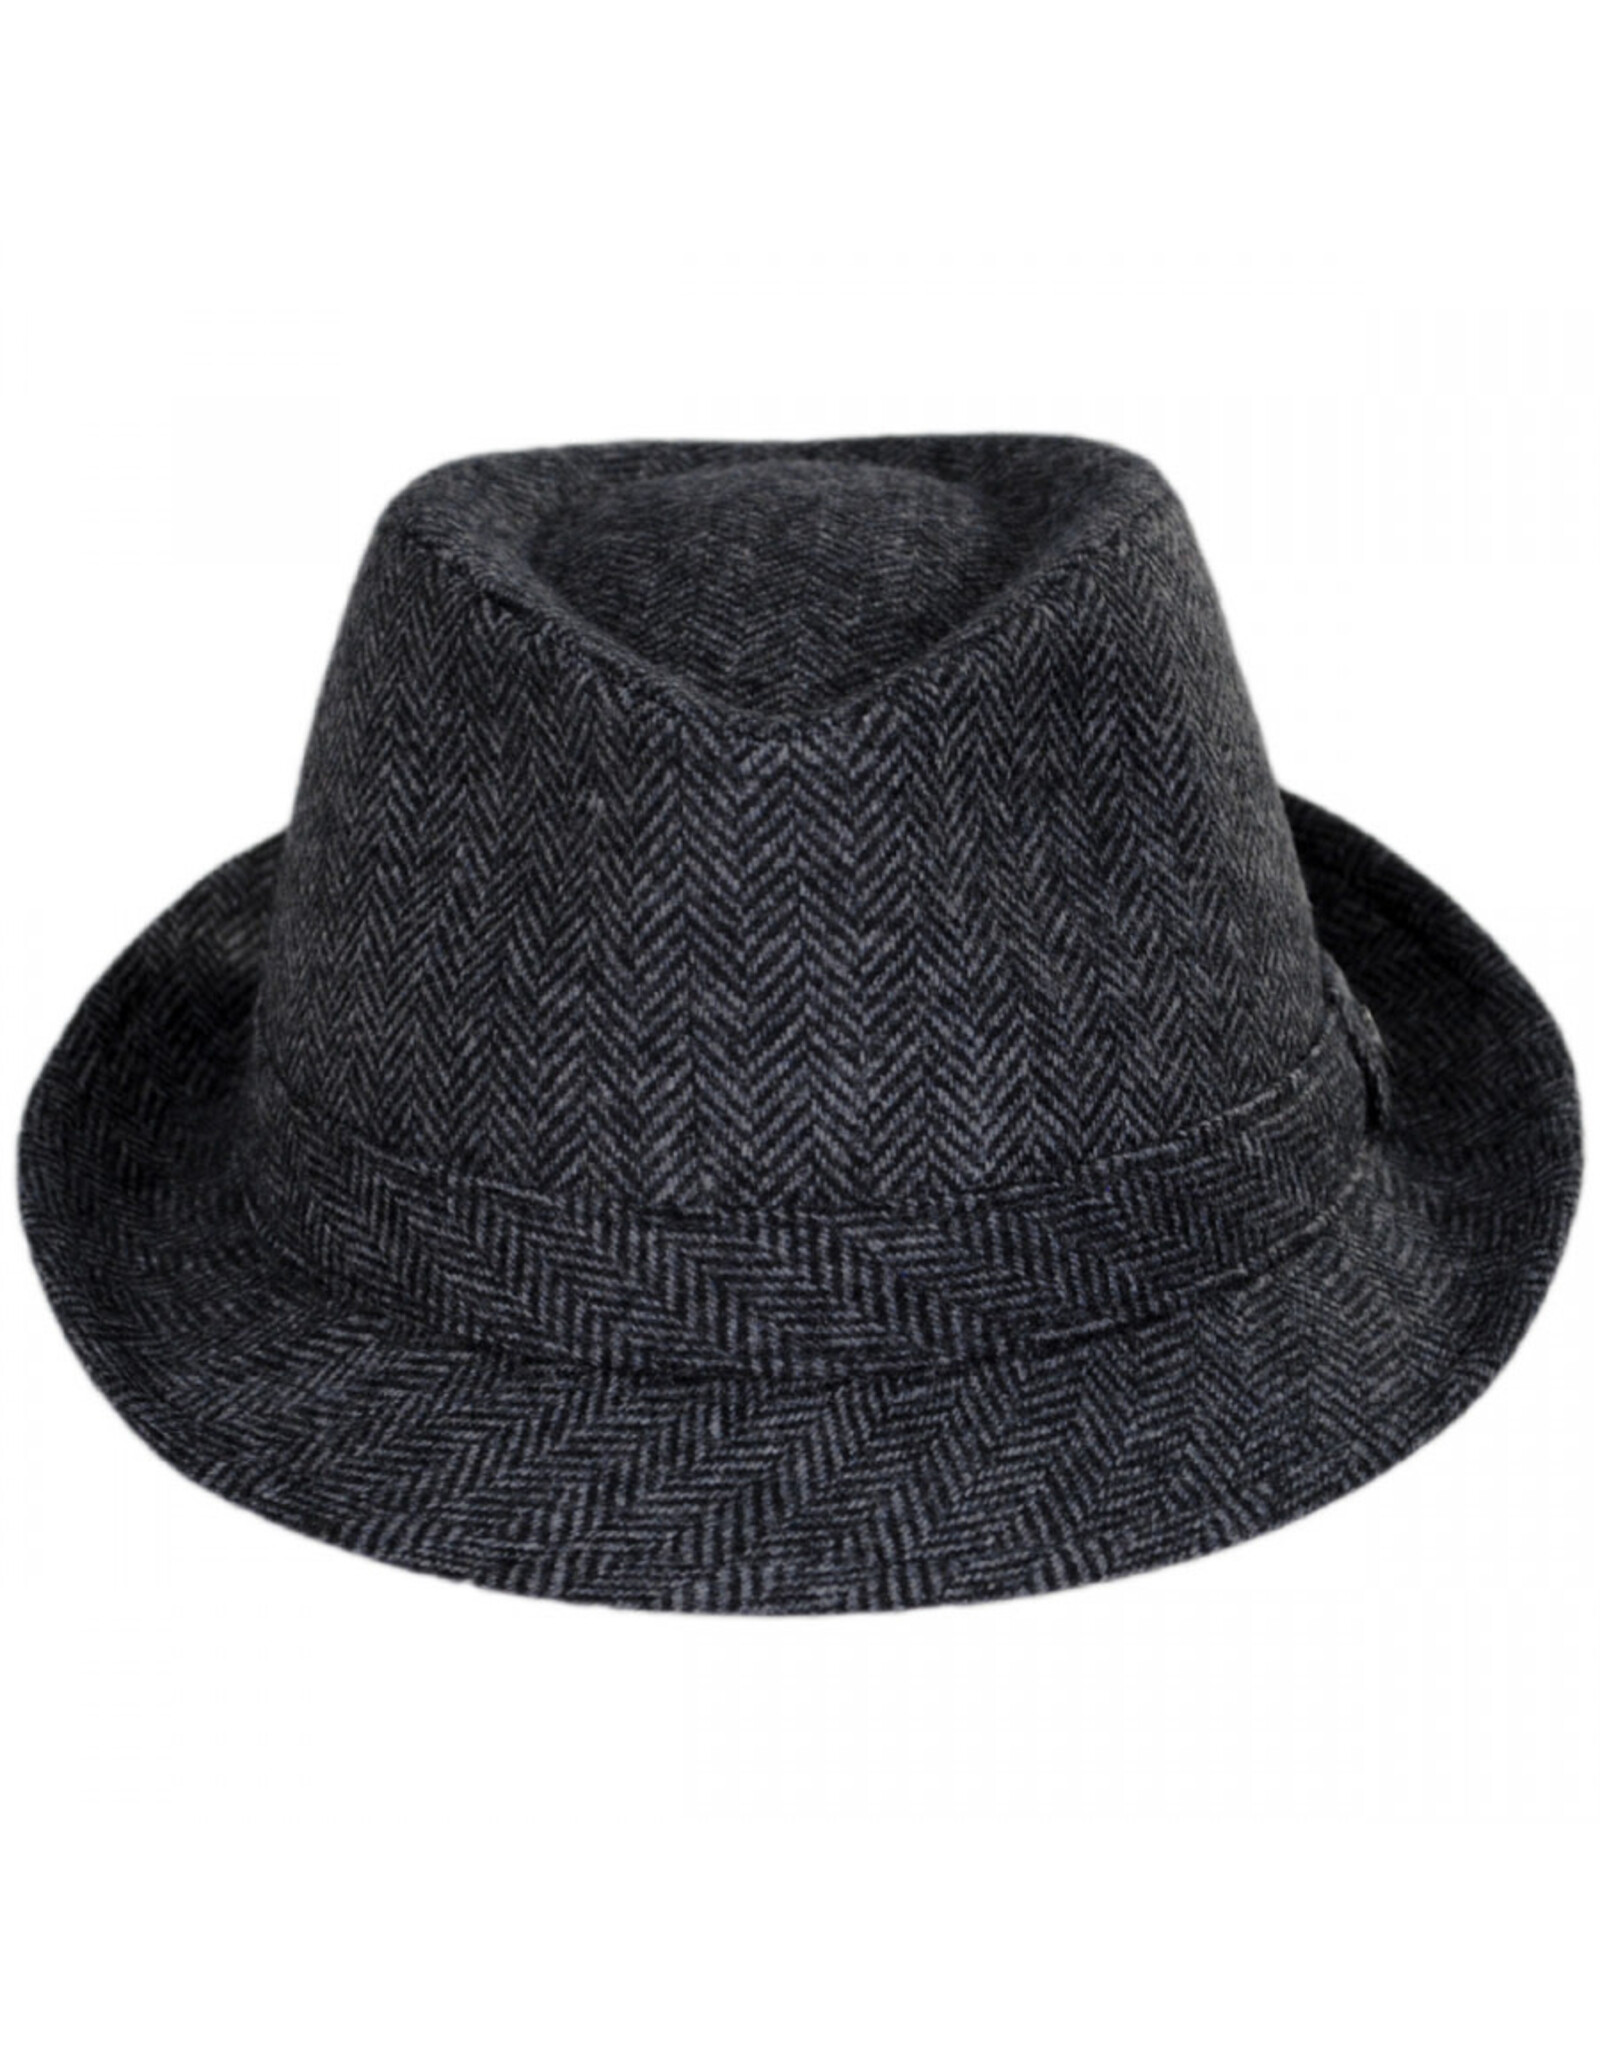 Jaxon Hats, Inc. XXL Herringbone Wool Trilby Fedora Hat